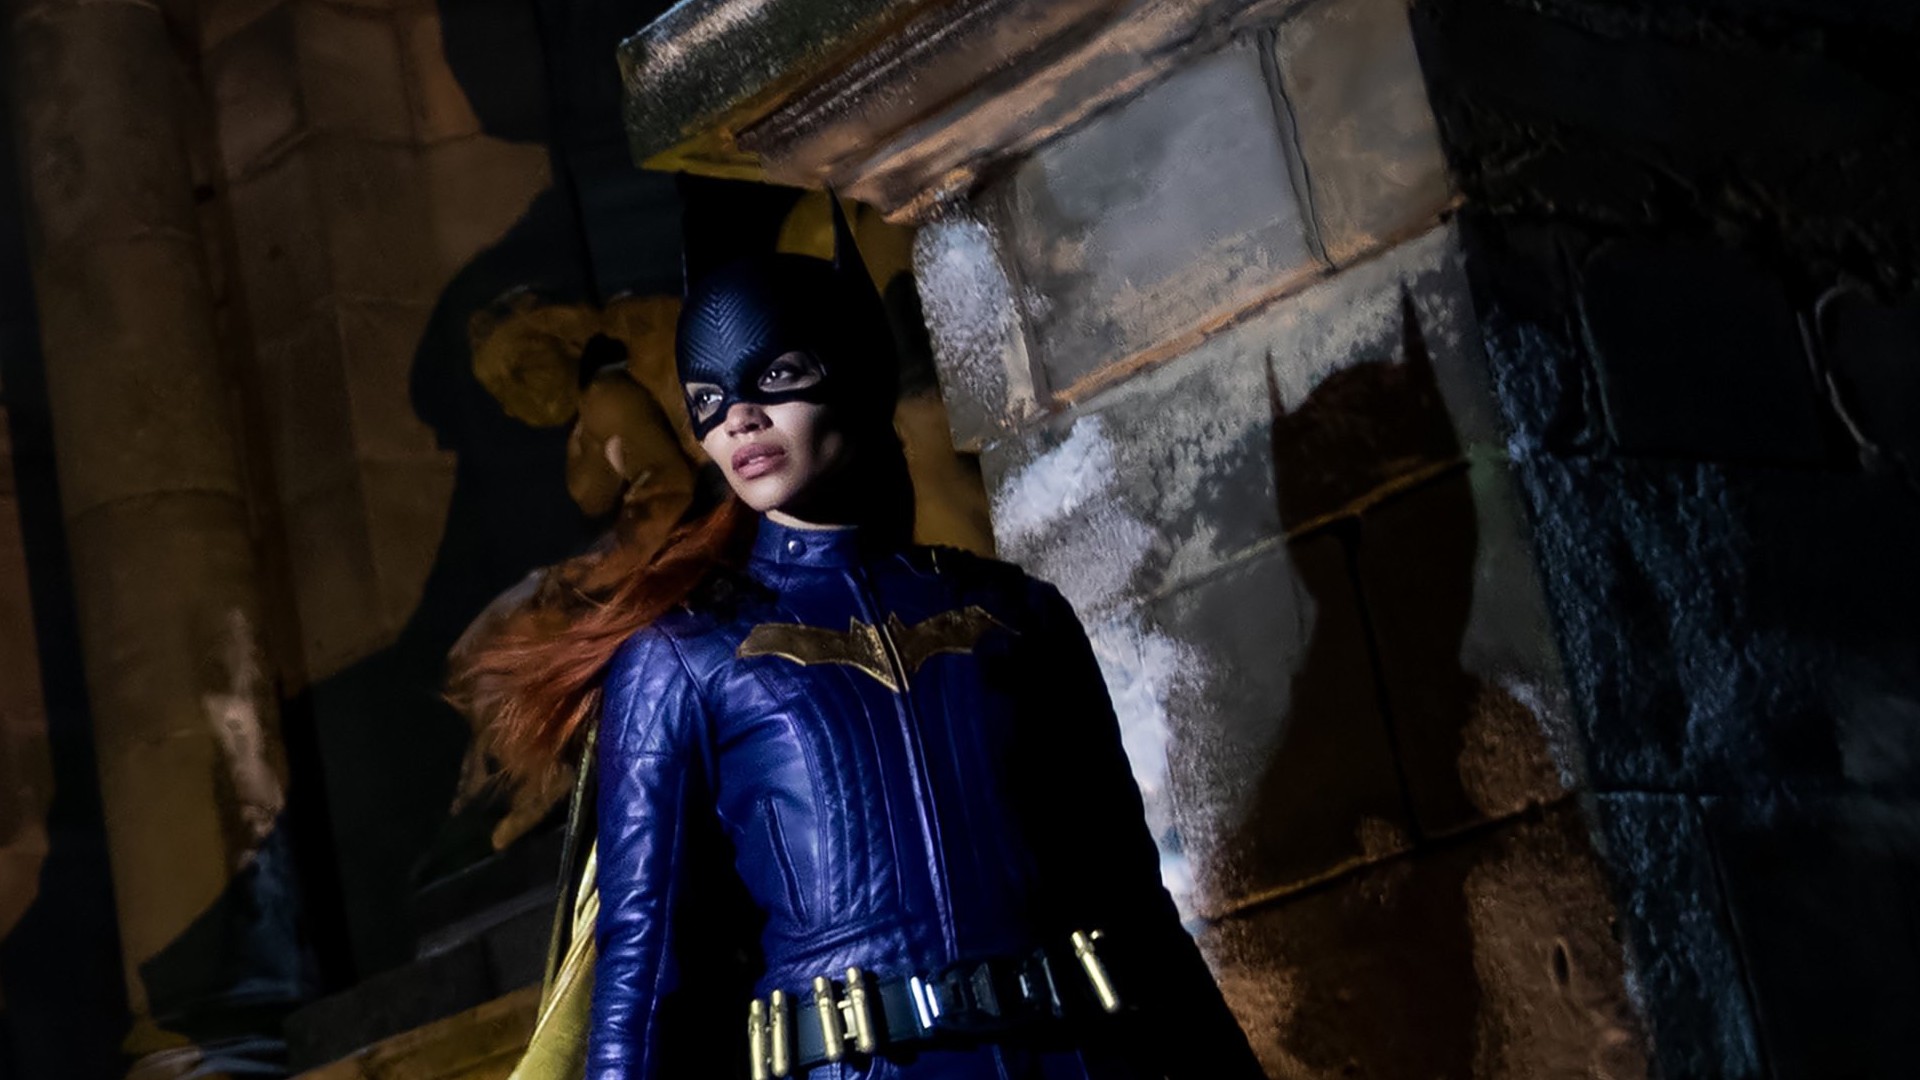 Batgirl set photo show Firefly heating up Gotham City